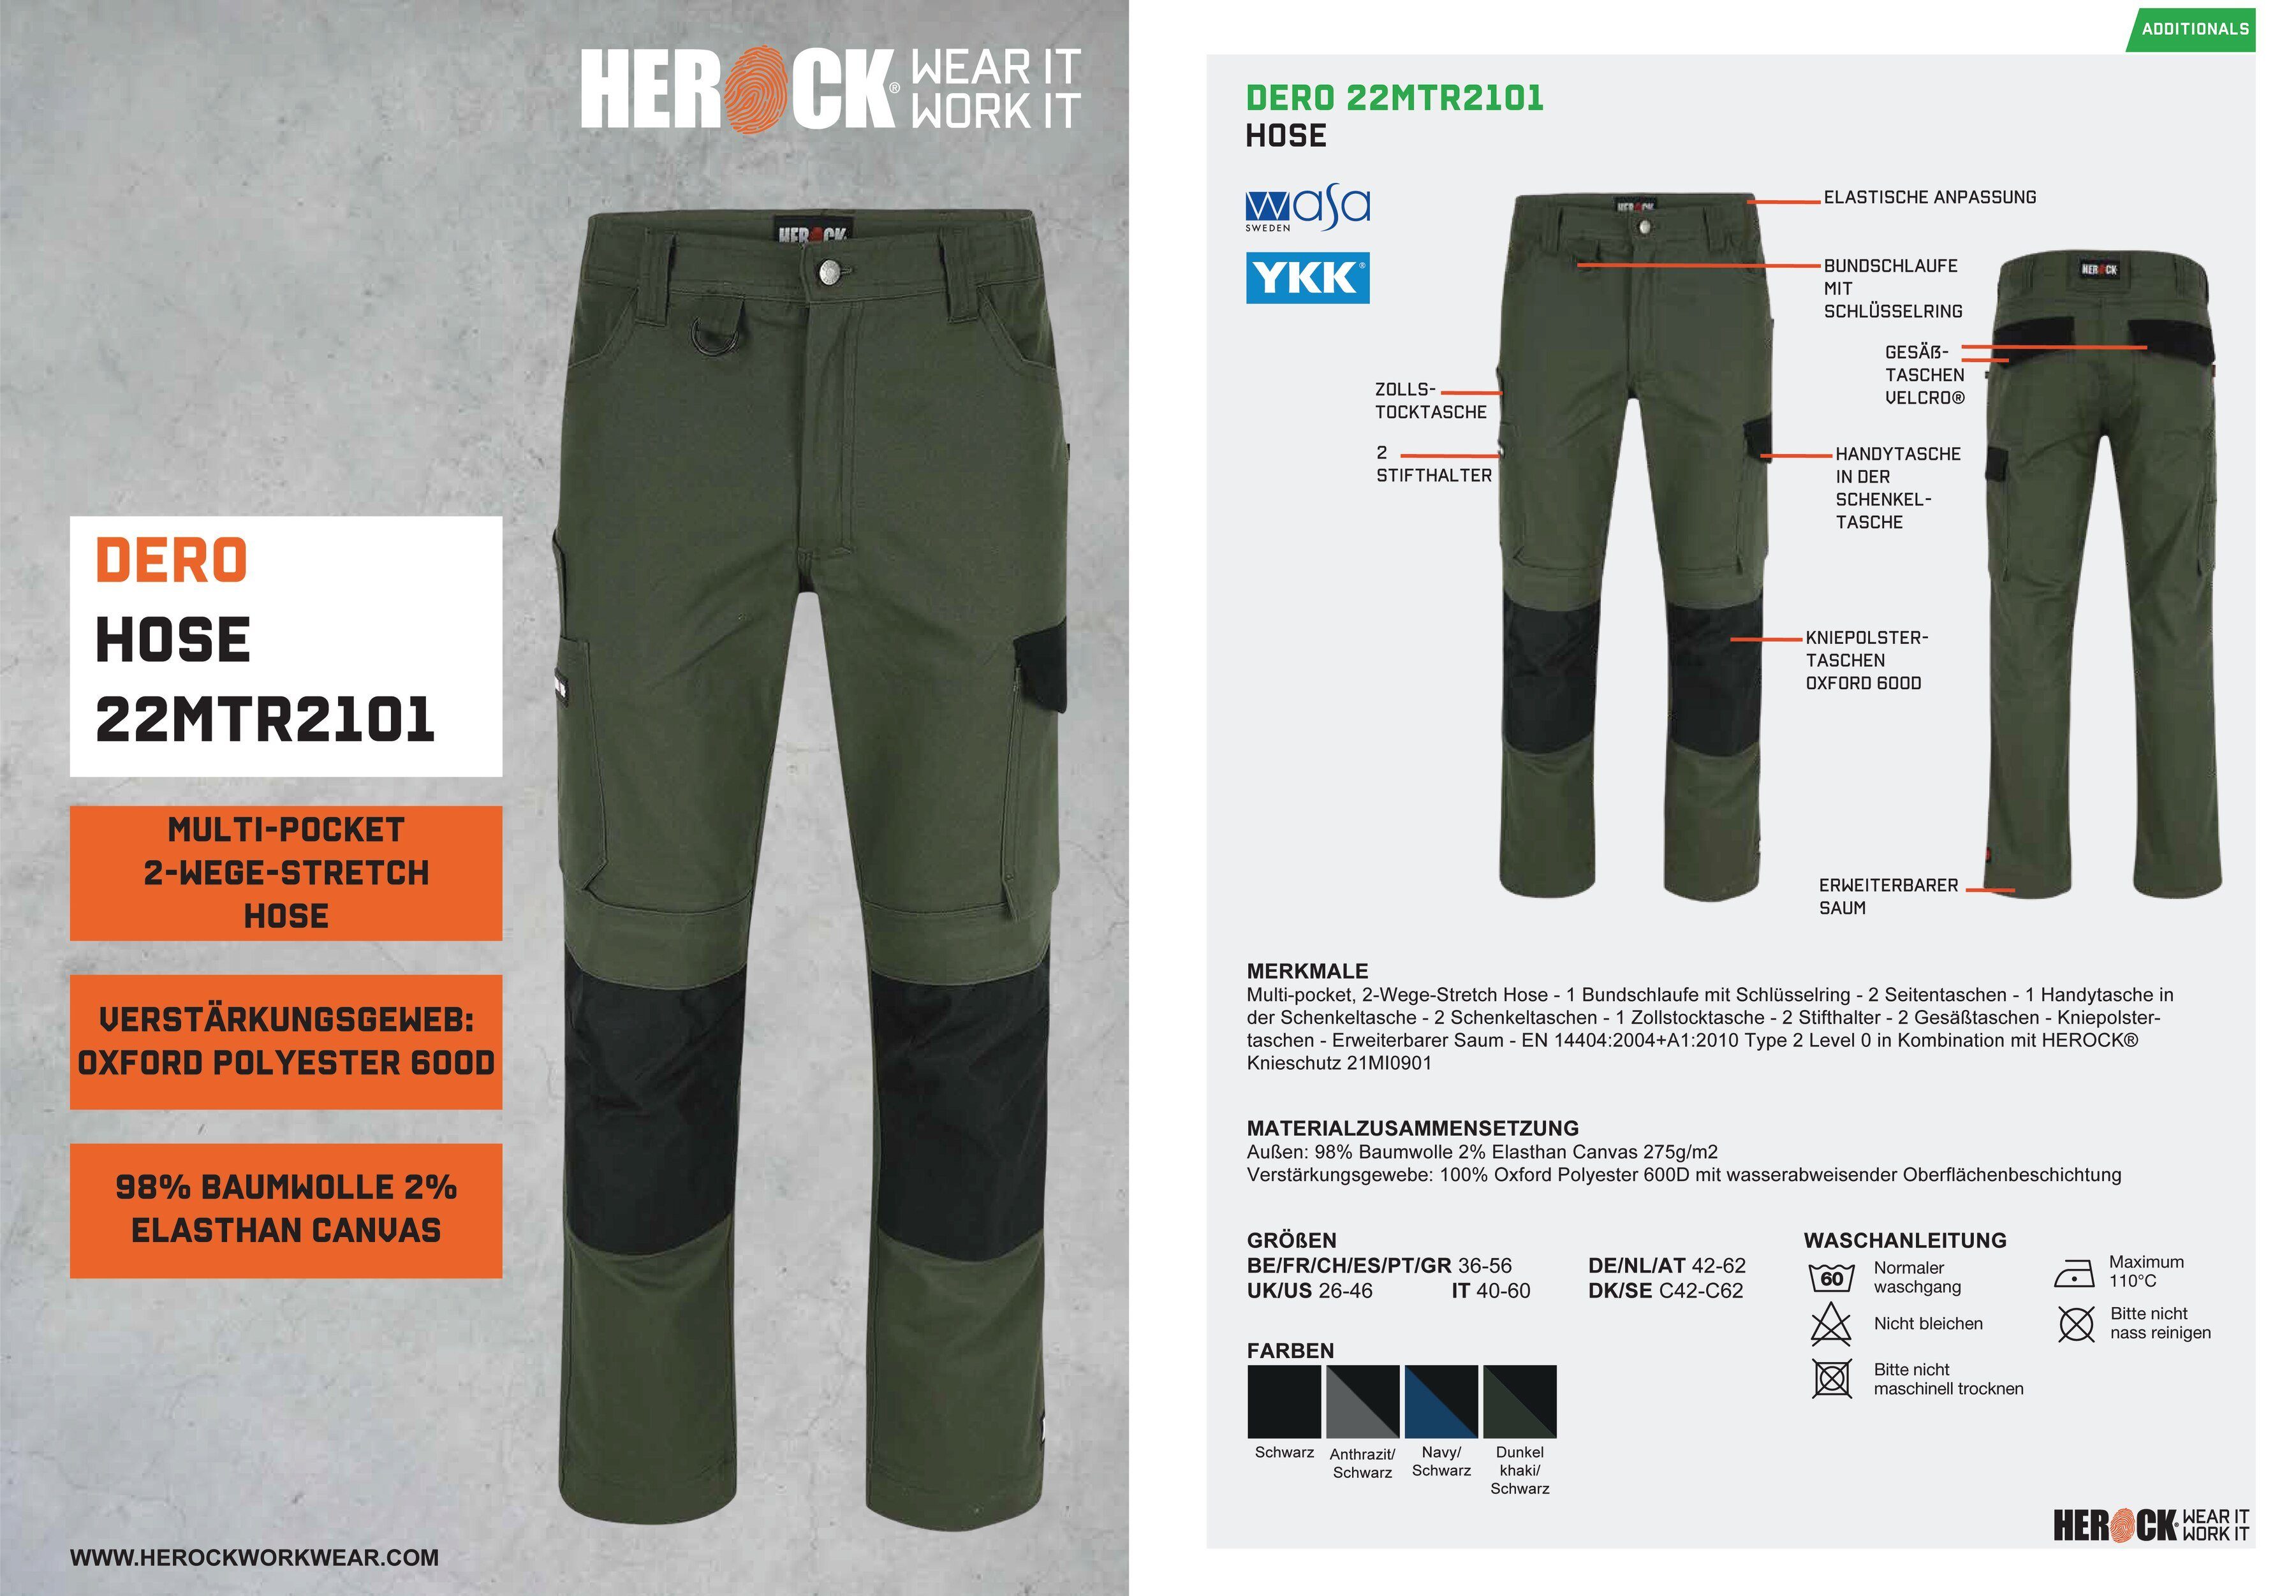 Herock Arbeitshose DERO Slim Fit Passform, khaki 2-Wege-Stretch, Multi-Pocket, wasserabweisend